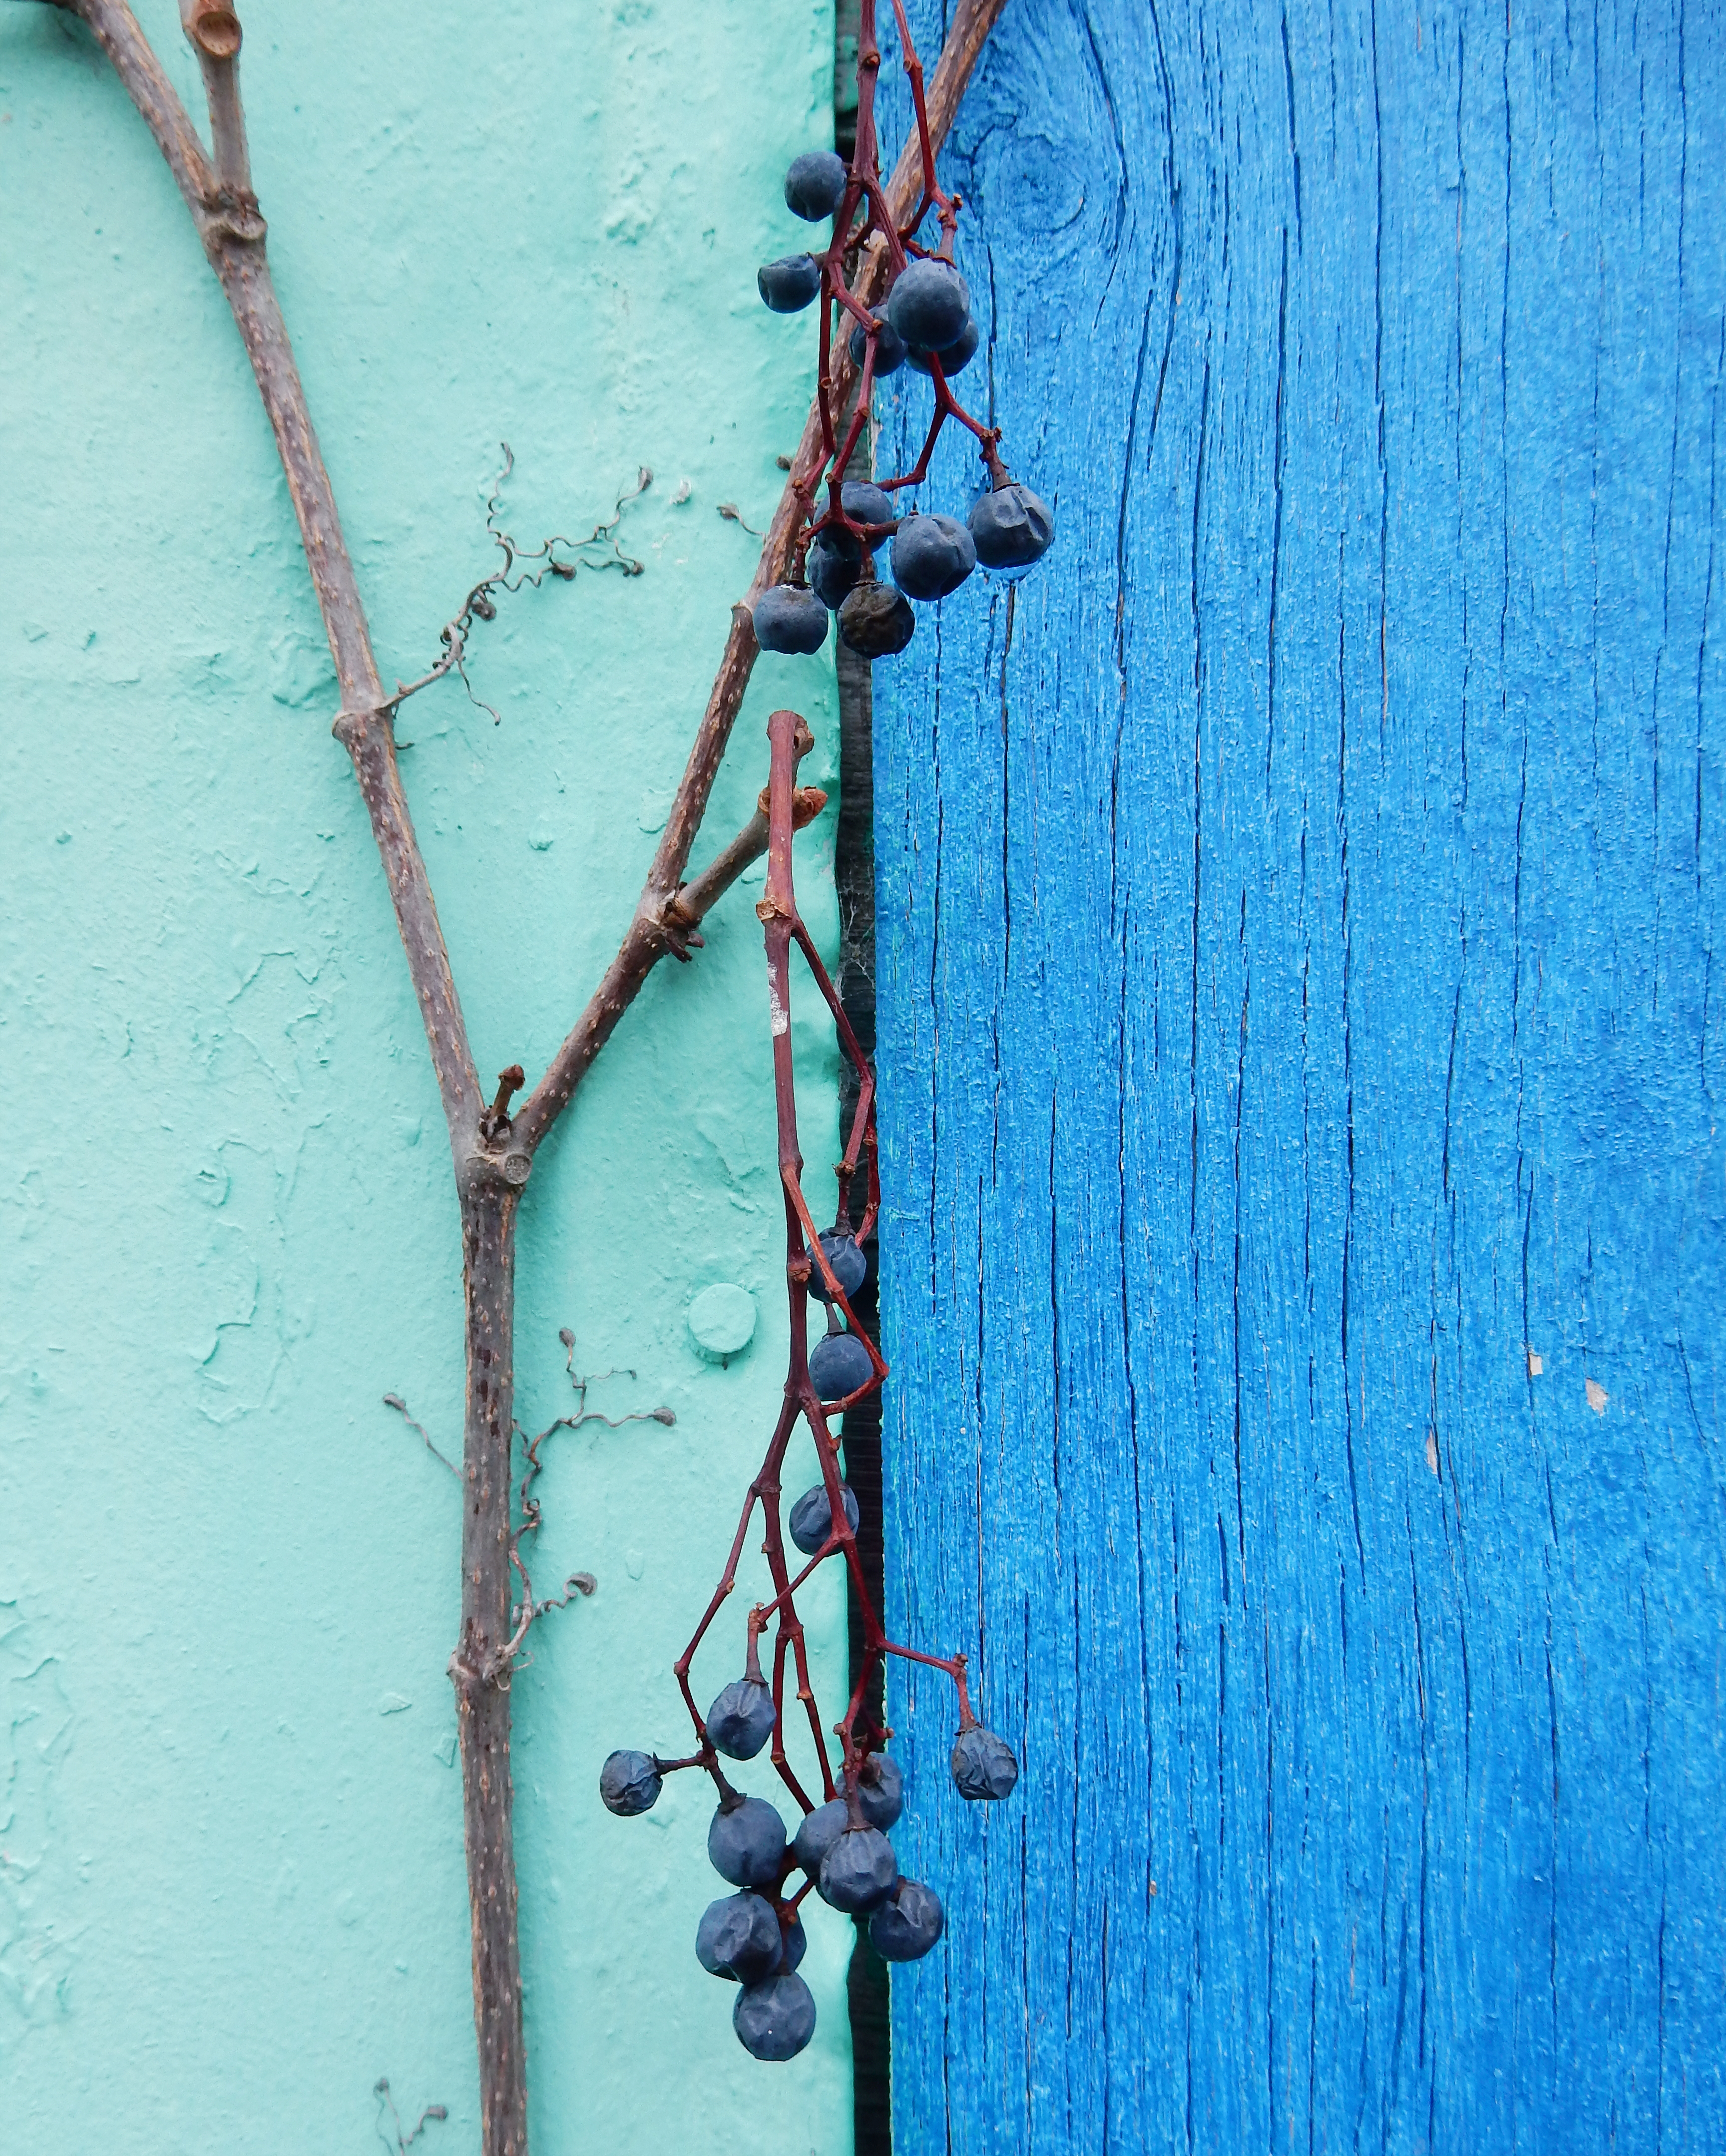 Mur turquoise du côté gauche, bleu électrique à droite. Il y a une ligne noire qui sépare les deux côté. En avant-plan, il y a une branche de vigne avec des raisins bleus desséchés.